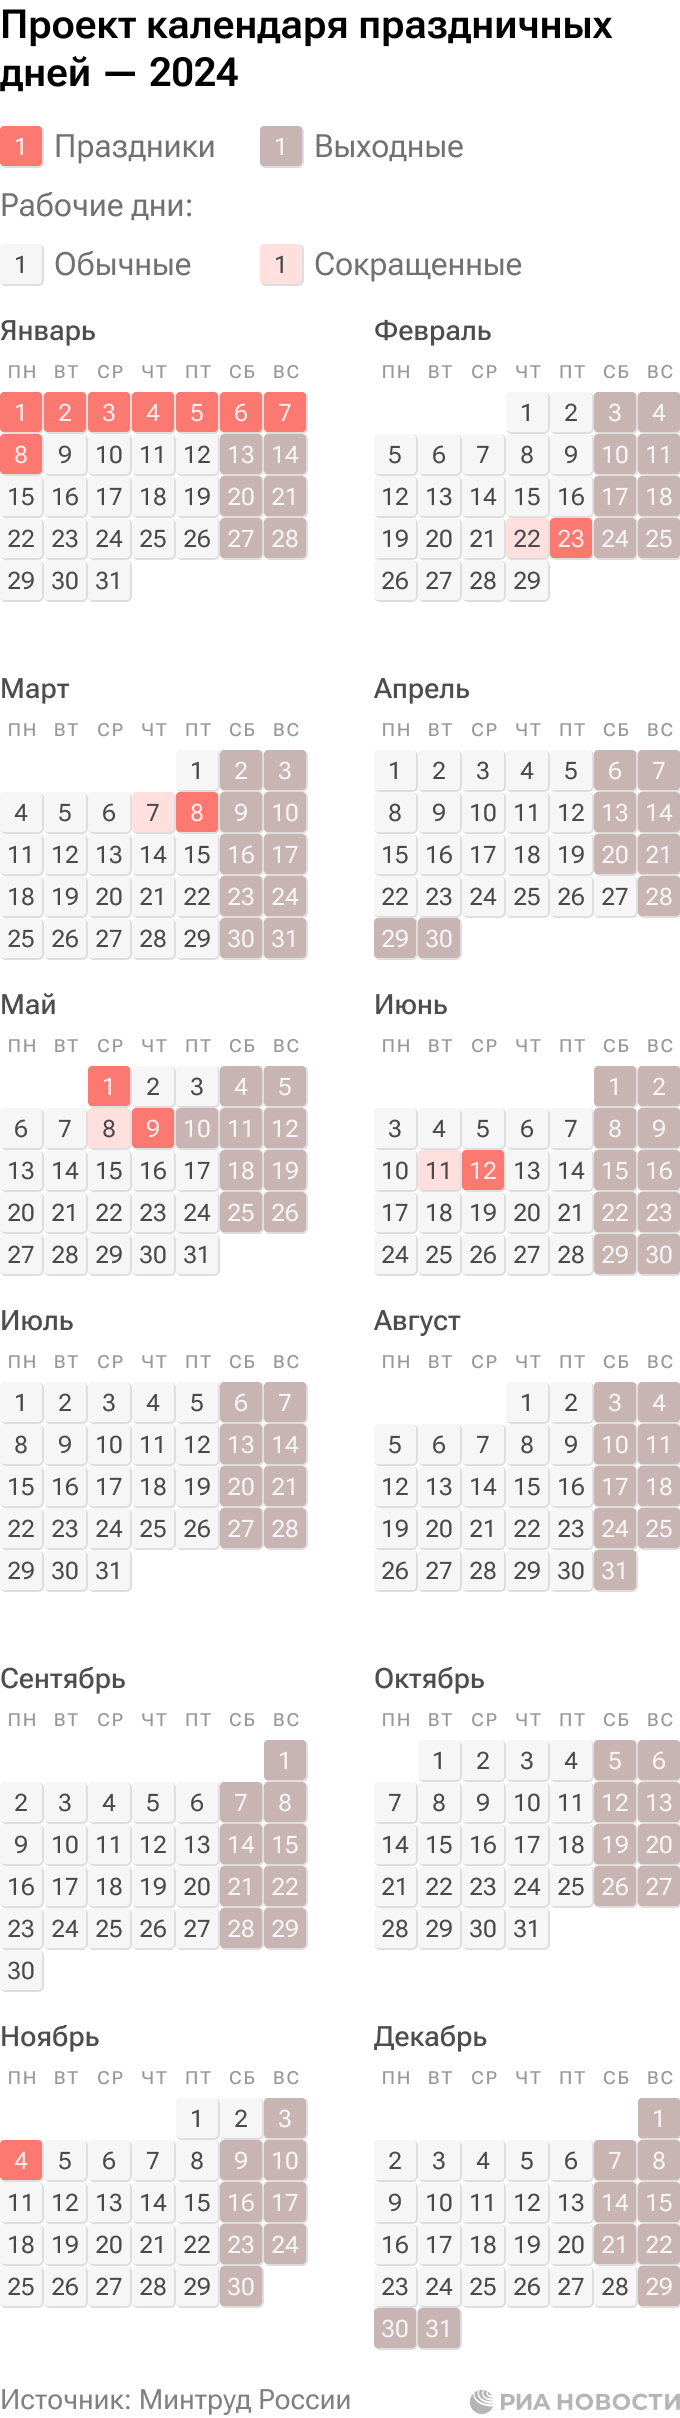 Календарь праздничных дней в 2024 году. Проект Минтруда - РИА Новости,  19.06.2023